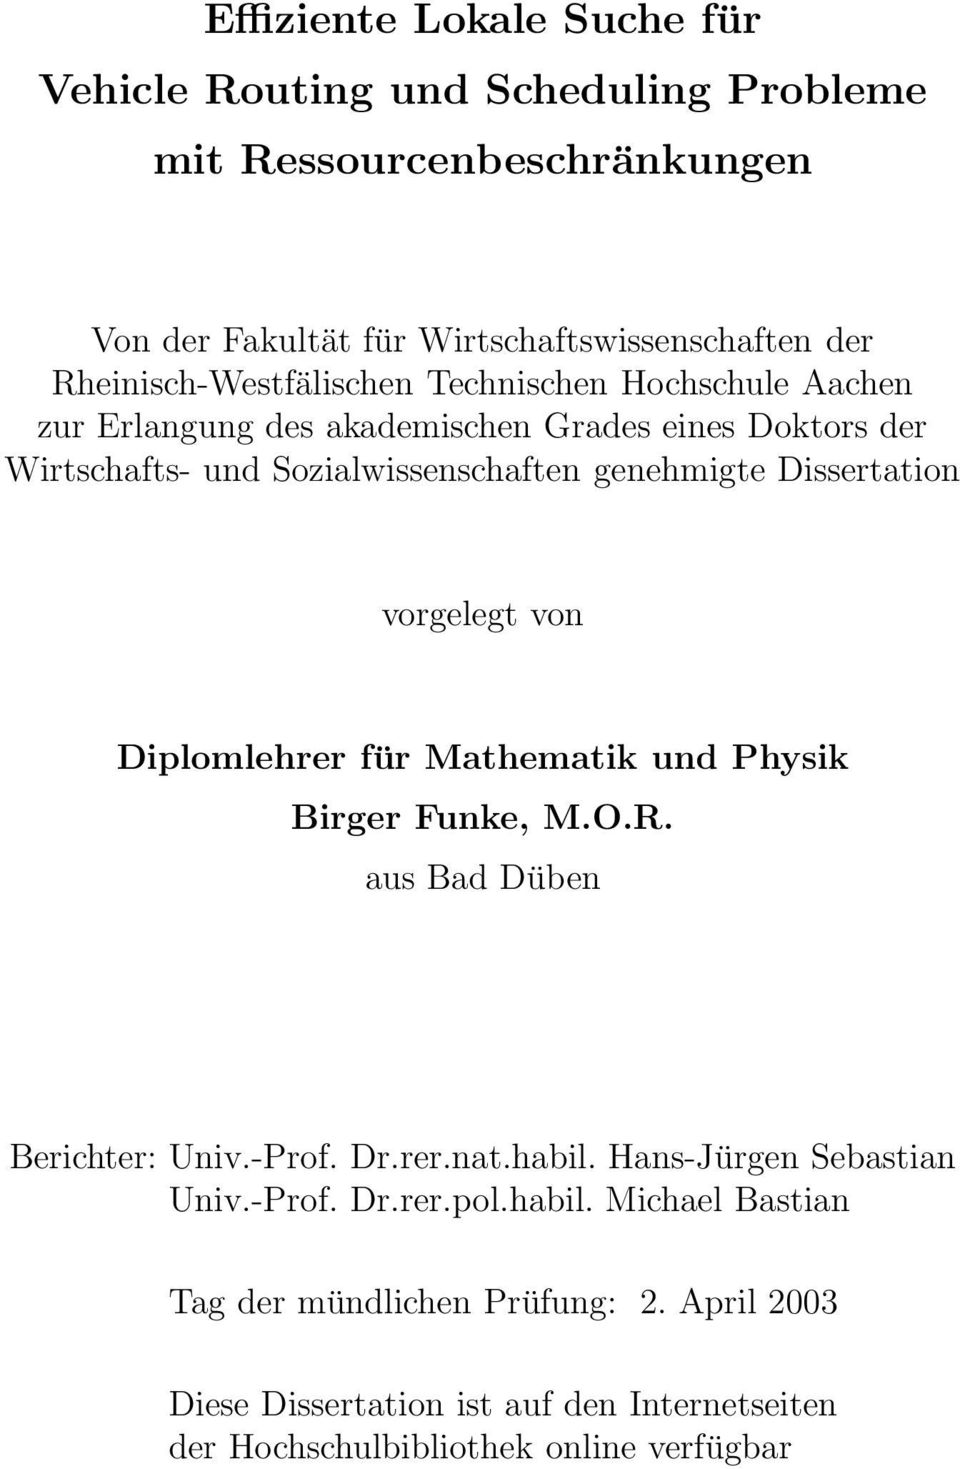 Dissertation vorgelegt von Diplomlehrer für Mathematik und Physik Birger Funke, M.O.R. aus Bad Düben Berichter: Univ.-Prof. Dr.rer.nat.habil.